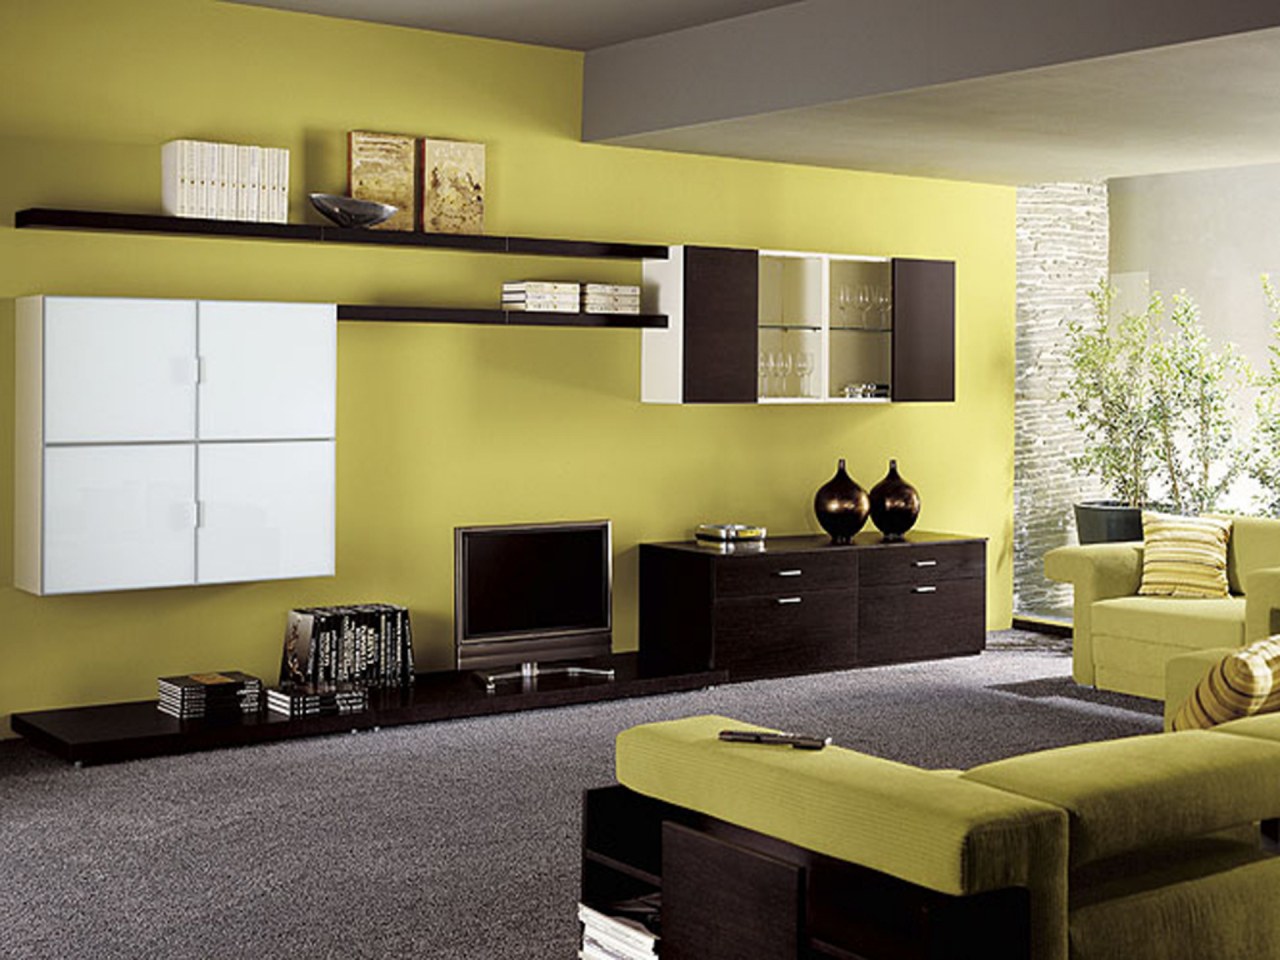 Какого цвета должна быть мебель. Мебель венге в интерьере. Интерьер комнаты. Сочетание венге в интерьере. Цветовые решения в интерьере.